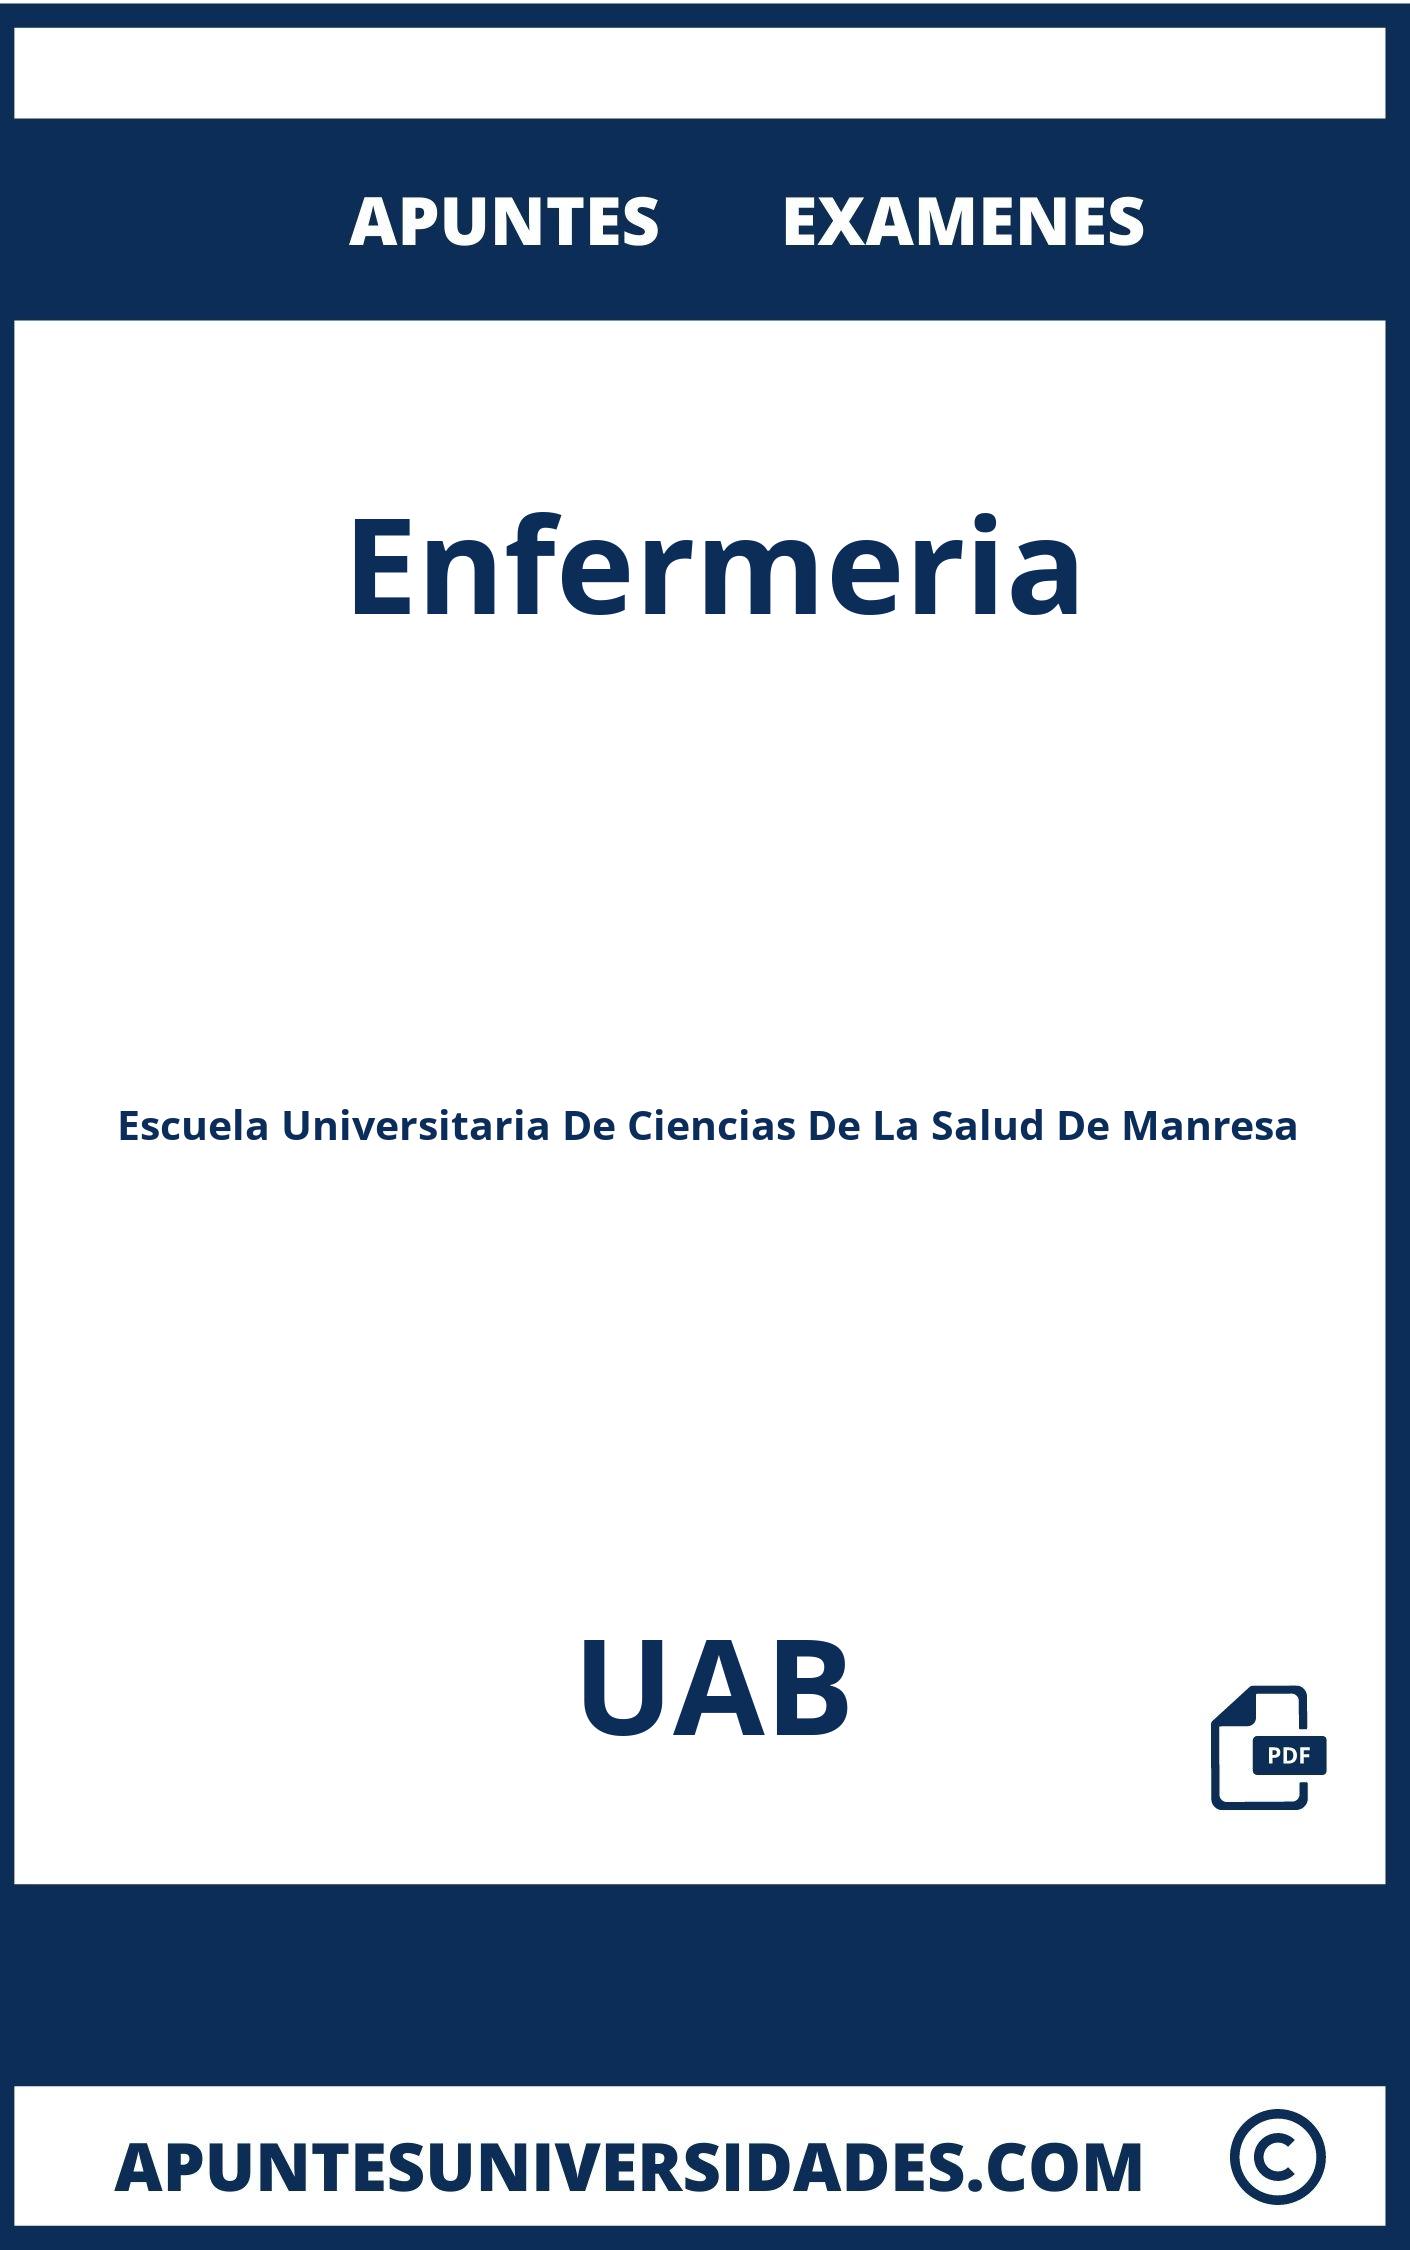 Examenes y Apuntes Enfermeria UAB